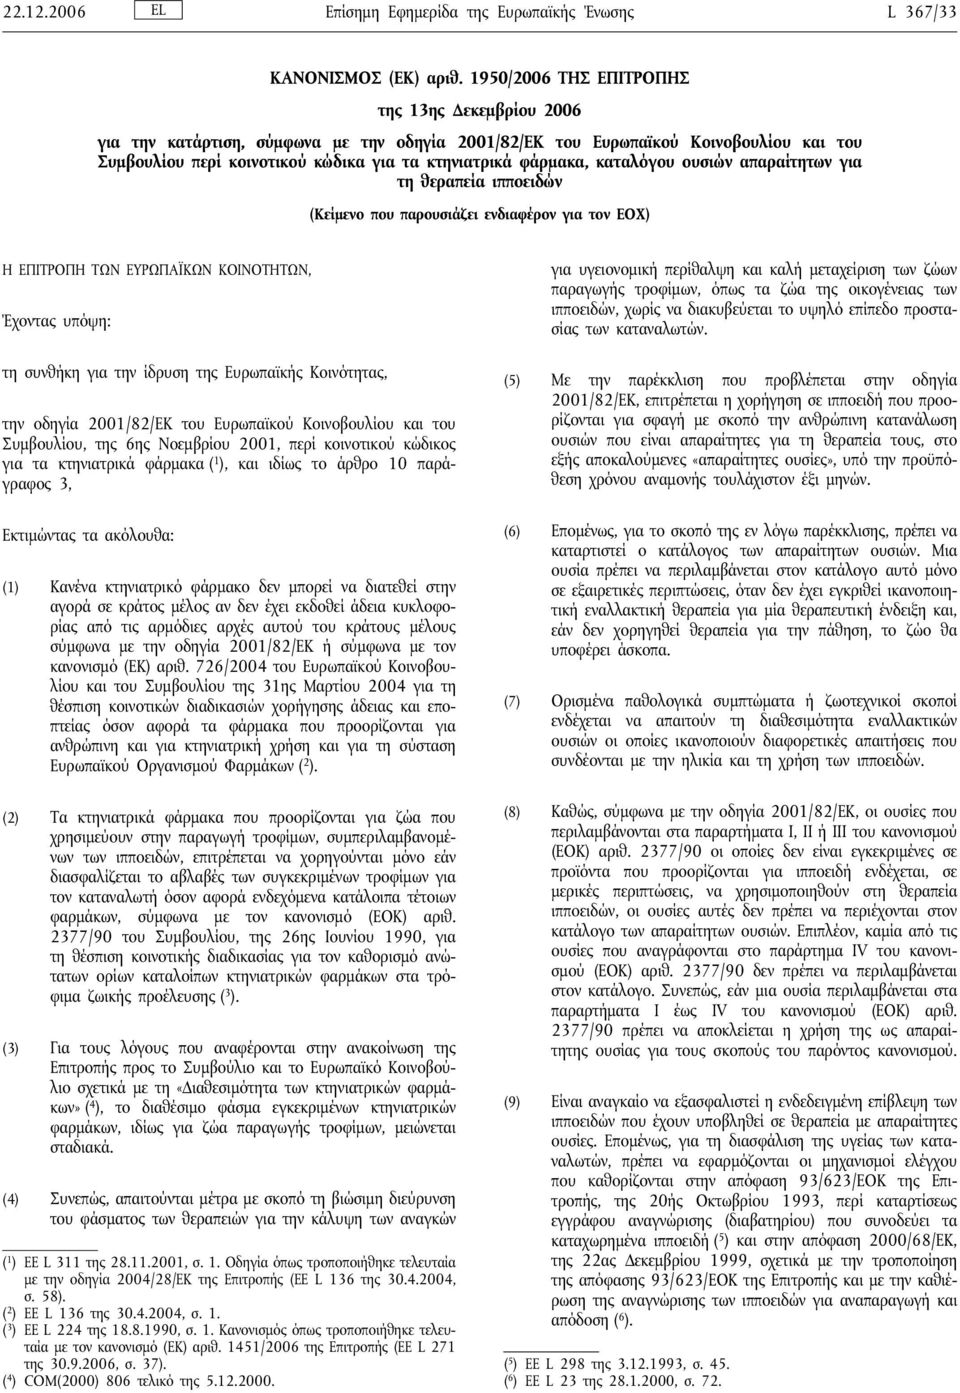 καταλόγου ουσιών απαραίτητων για τη θεραπεία ιπποειδών (Κείμενο που παρουσιάζει ενδιαφέρον για τον ΕΟΧ) Η ΕΠΙΤΡΟΠΗ ΤΩΝ ΕΥΡΩΠΑΪΚΩΝ ΚΟΙΝΟΤΗΤΩΝ, Έχοντας υπόψη: τη συνθήκη για την ίδρυση της Ευρωπαϊκής